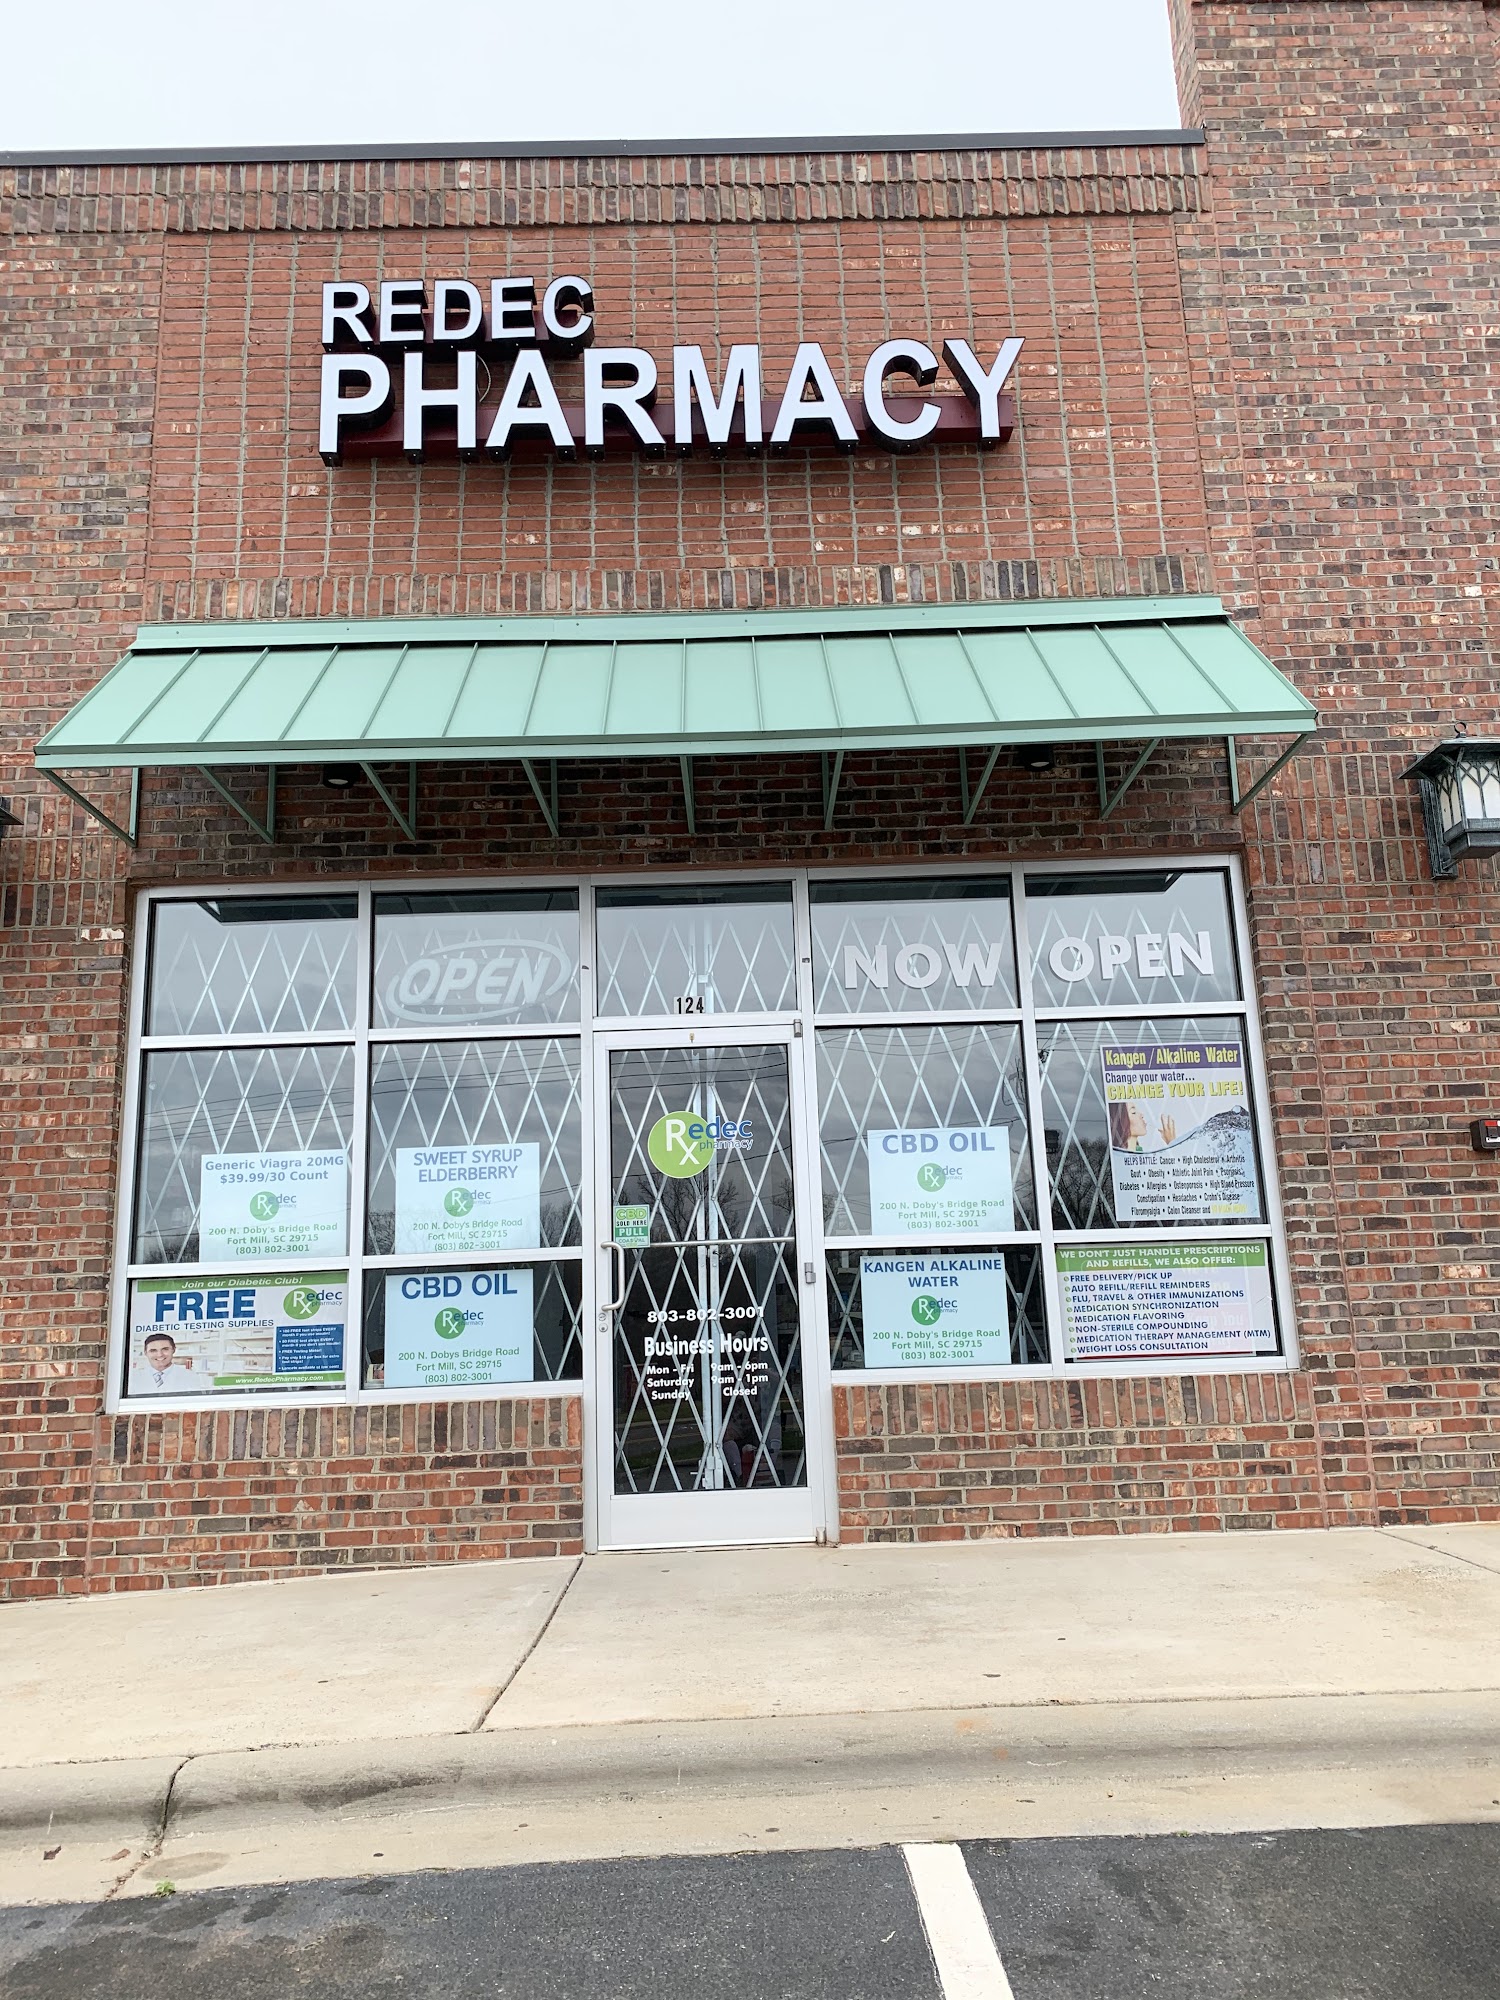 Redec pharmacy